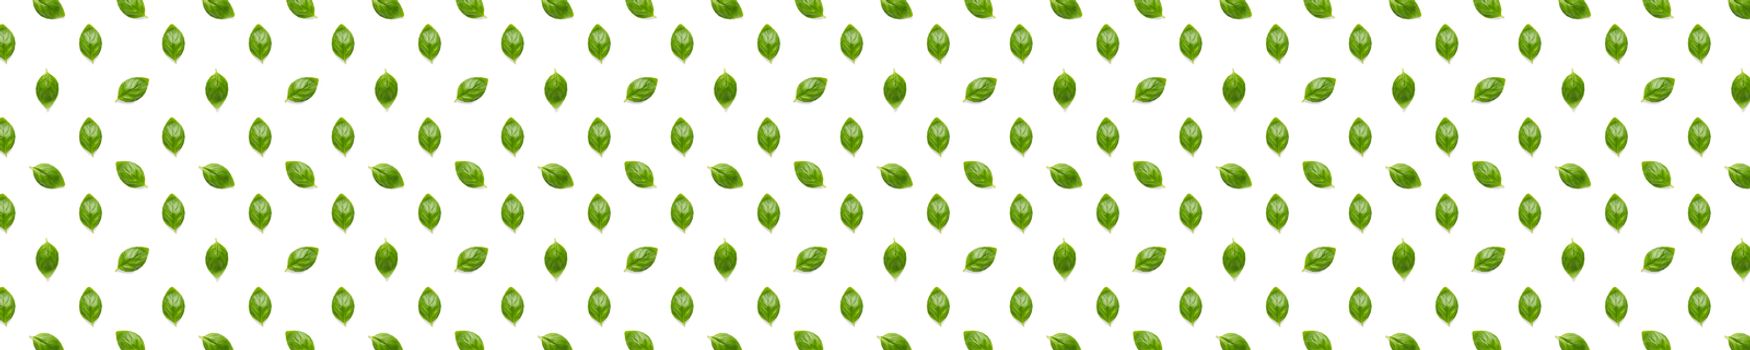 Basil banner. Green leaves of fresh italian basil background on whte backdrop. Basil leaves isolated on white background. Modern background. not pattern